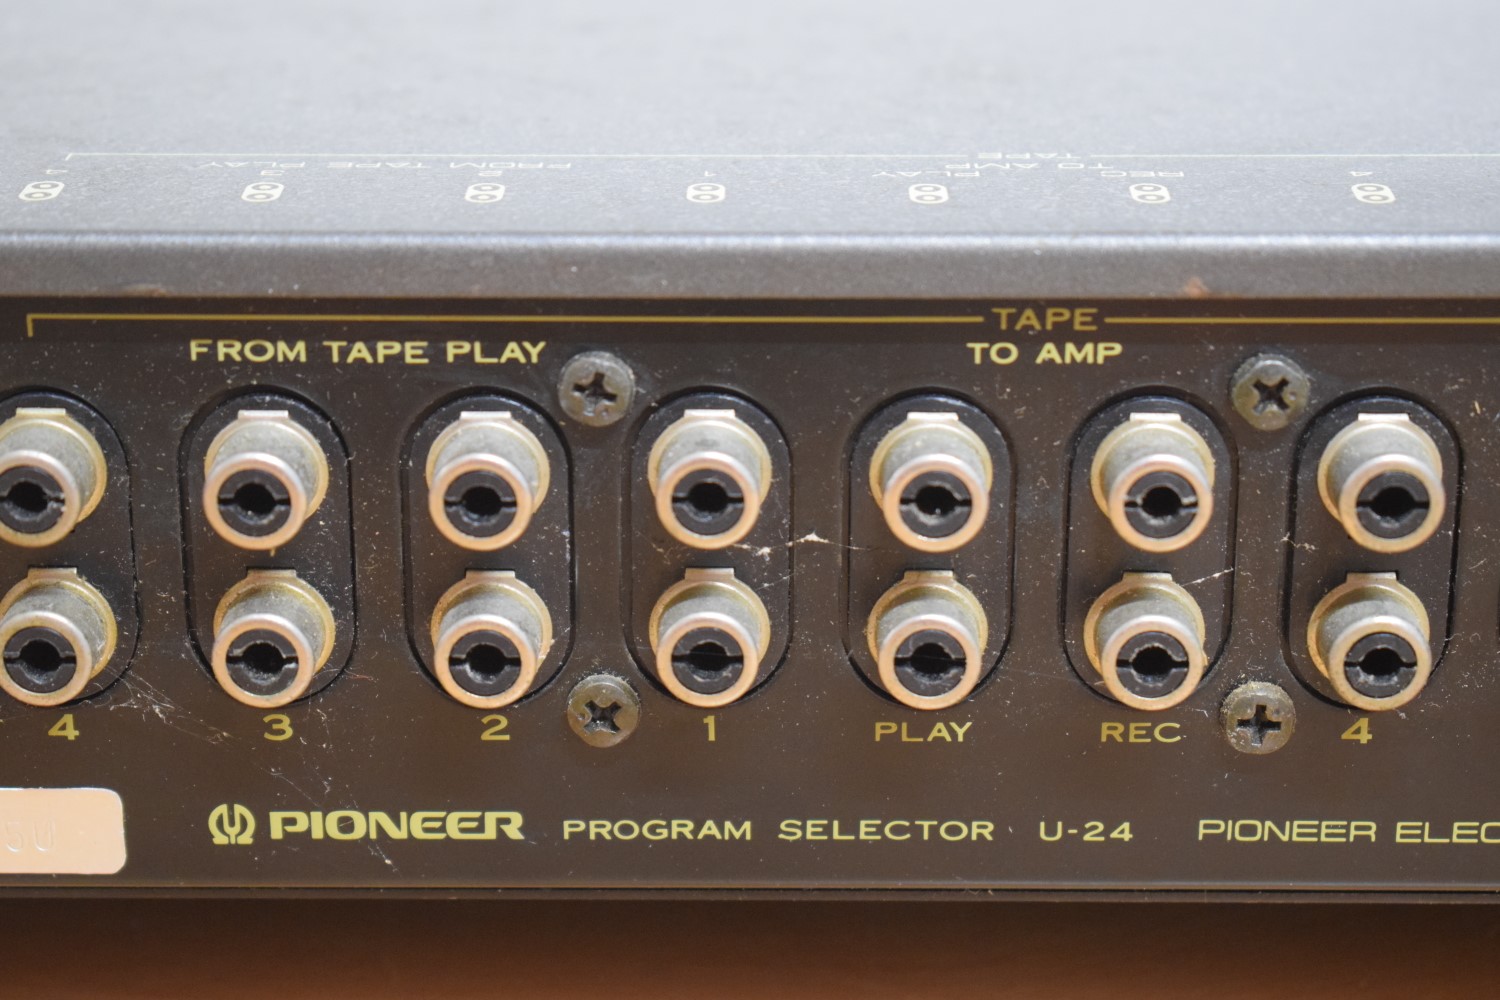 Pioneer U-24 Program Selector